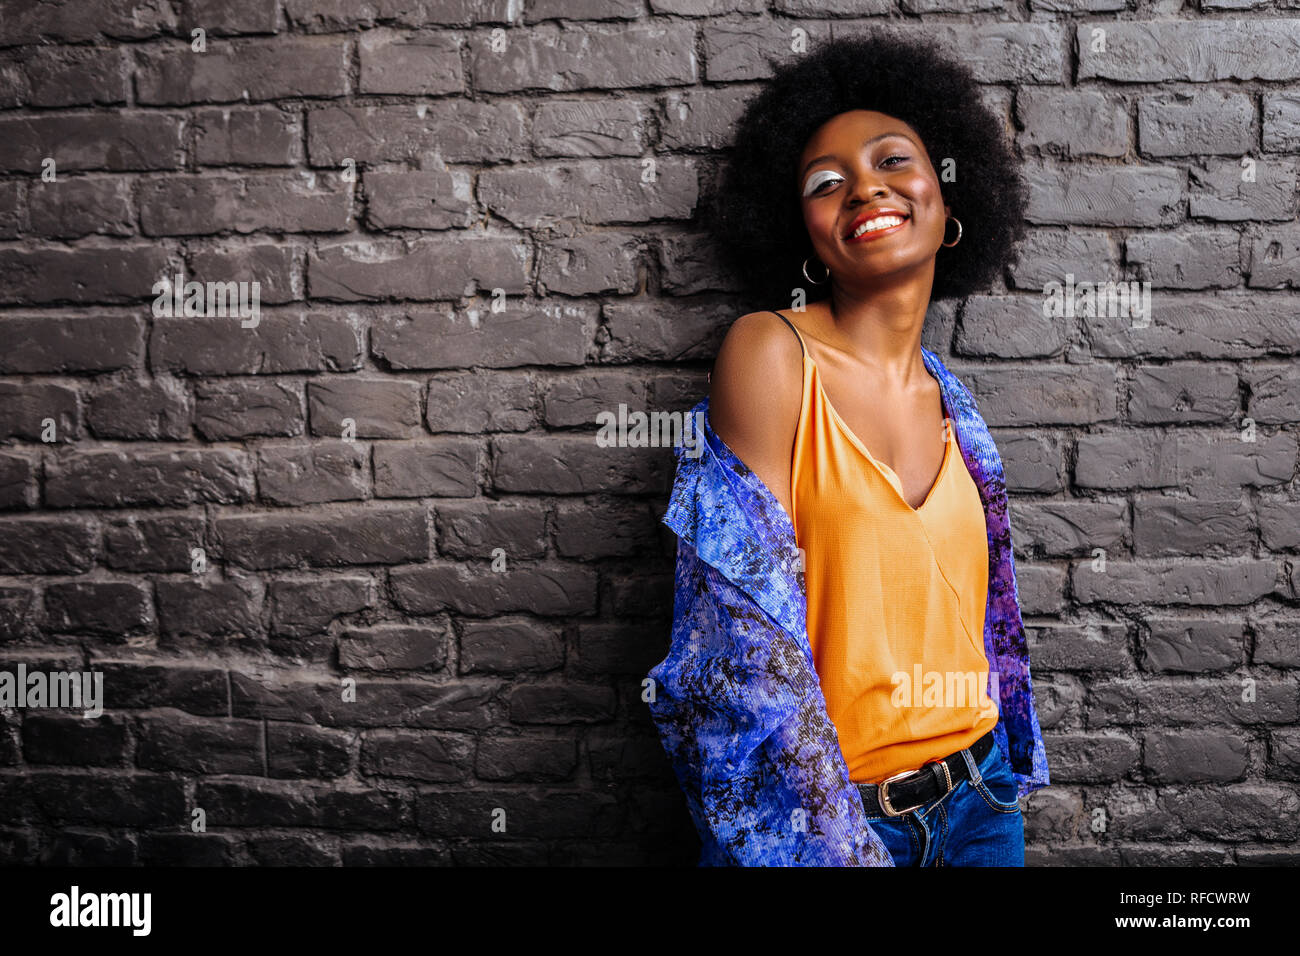 L'Afrique de l'adorable modèle américain dans une chemise qui pose pour la photo Banque D'Images